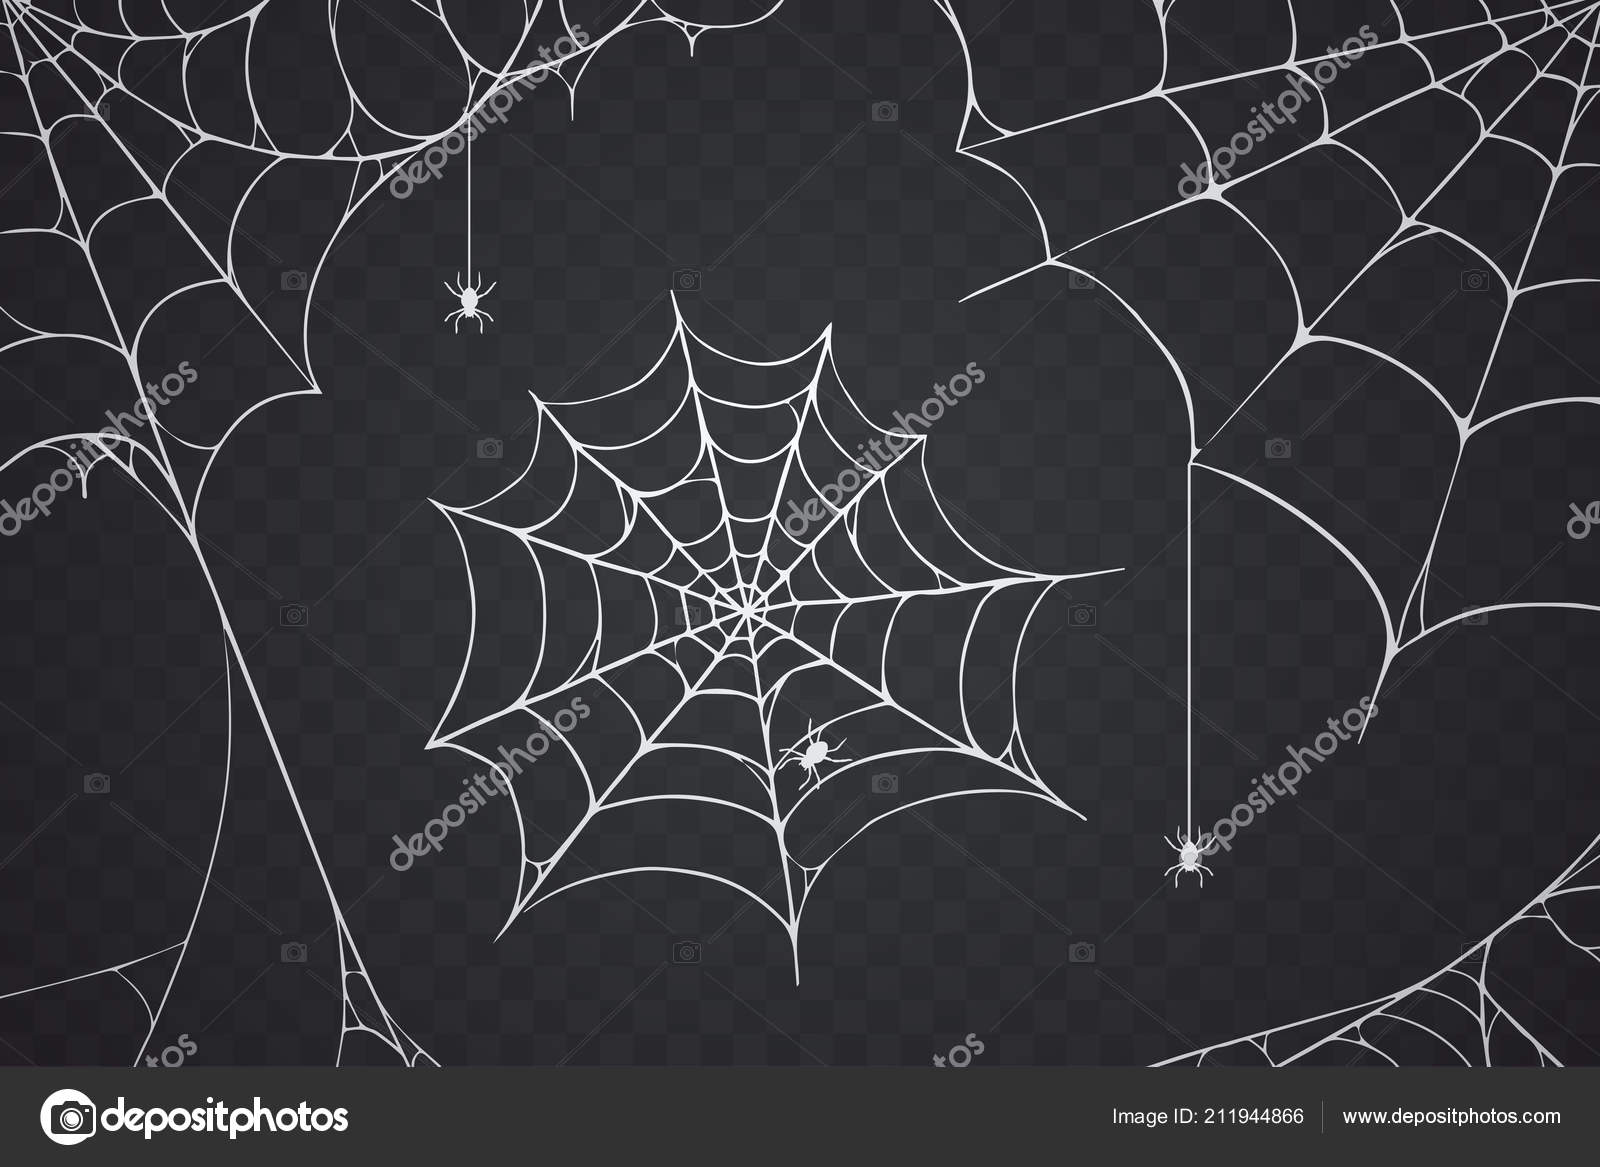 vetor de aranha preta assustadora com uma cara assustadora. design